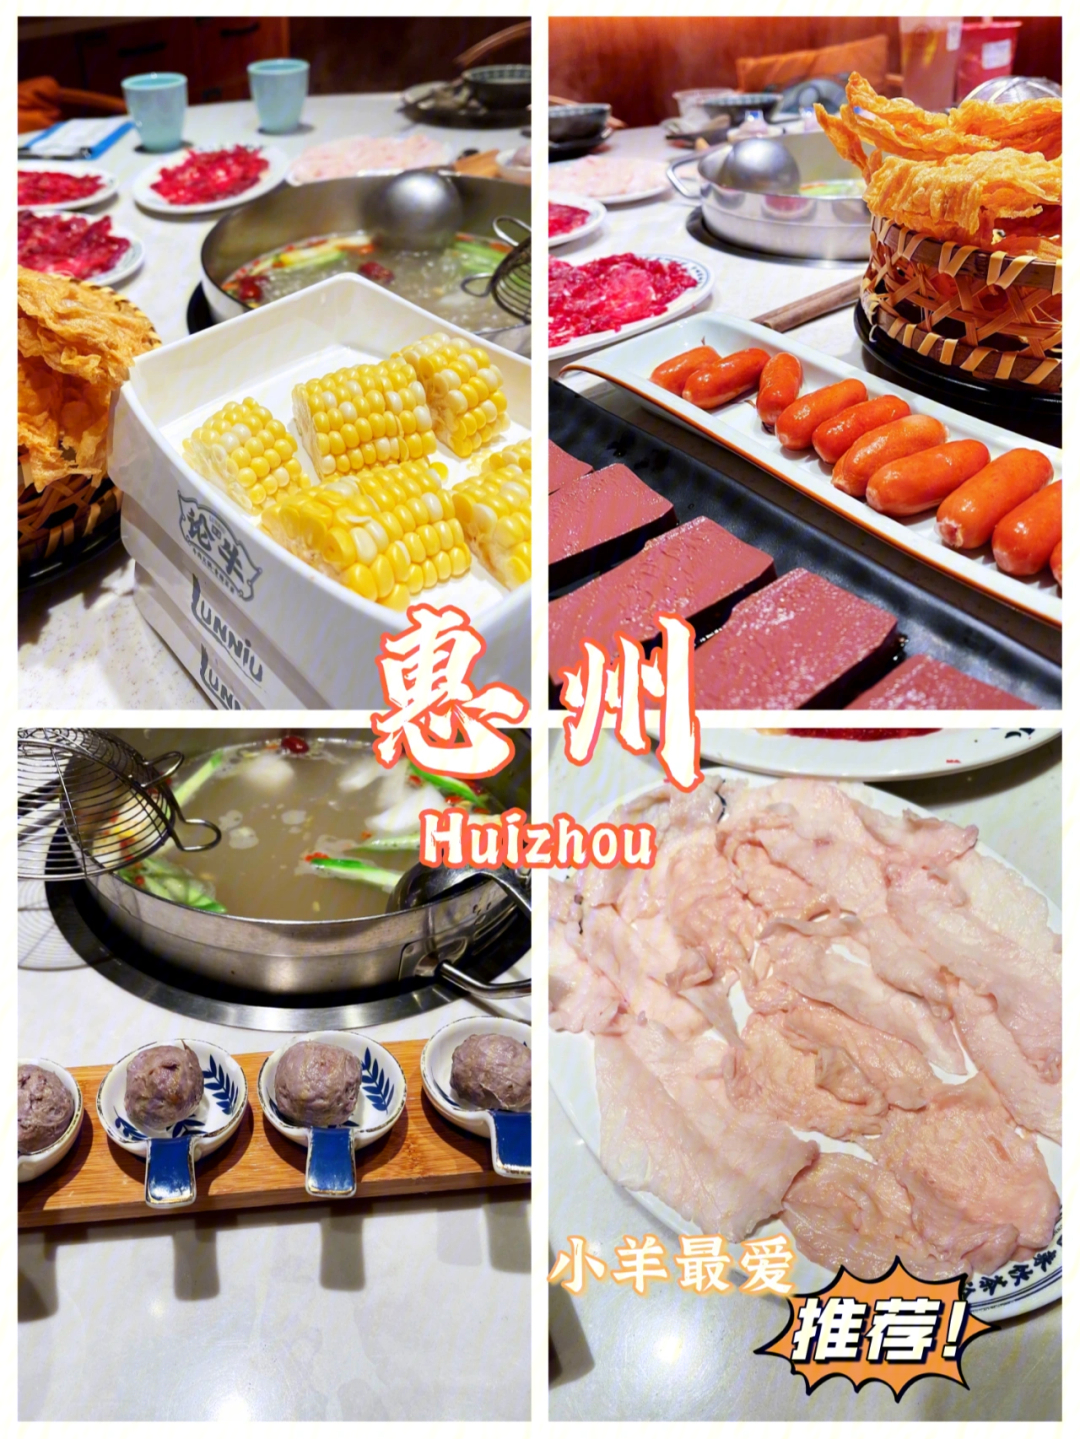 惠州美食丨吉之岛丨周末打卡99元牛肉火锅